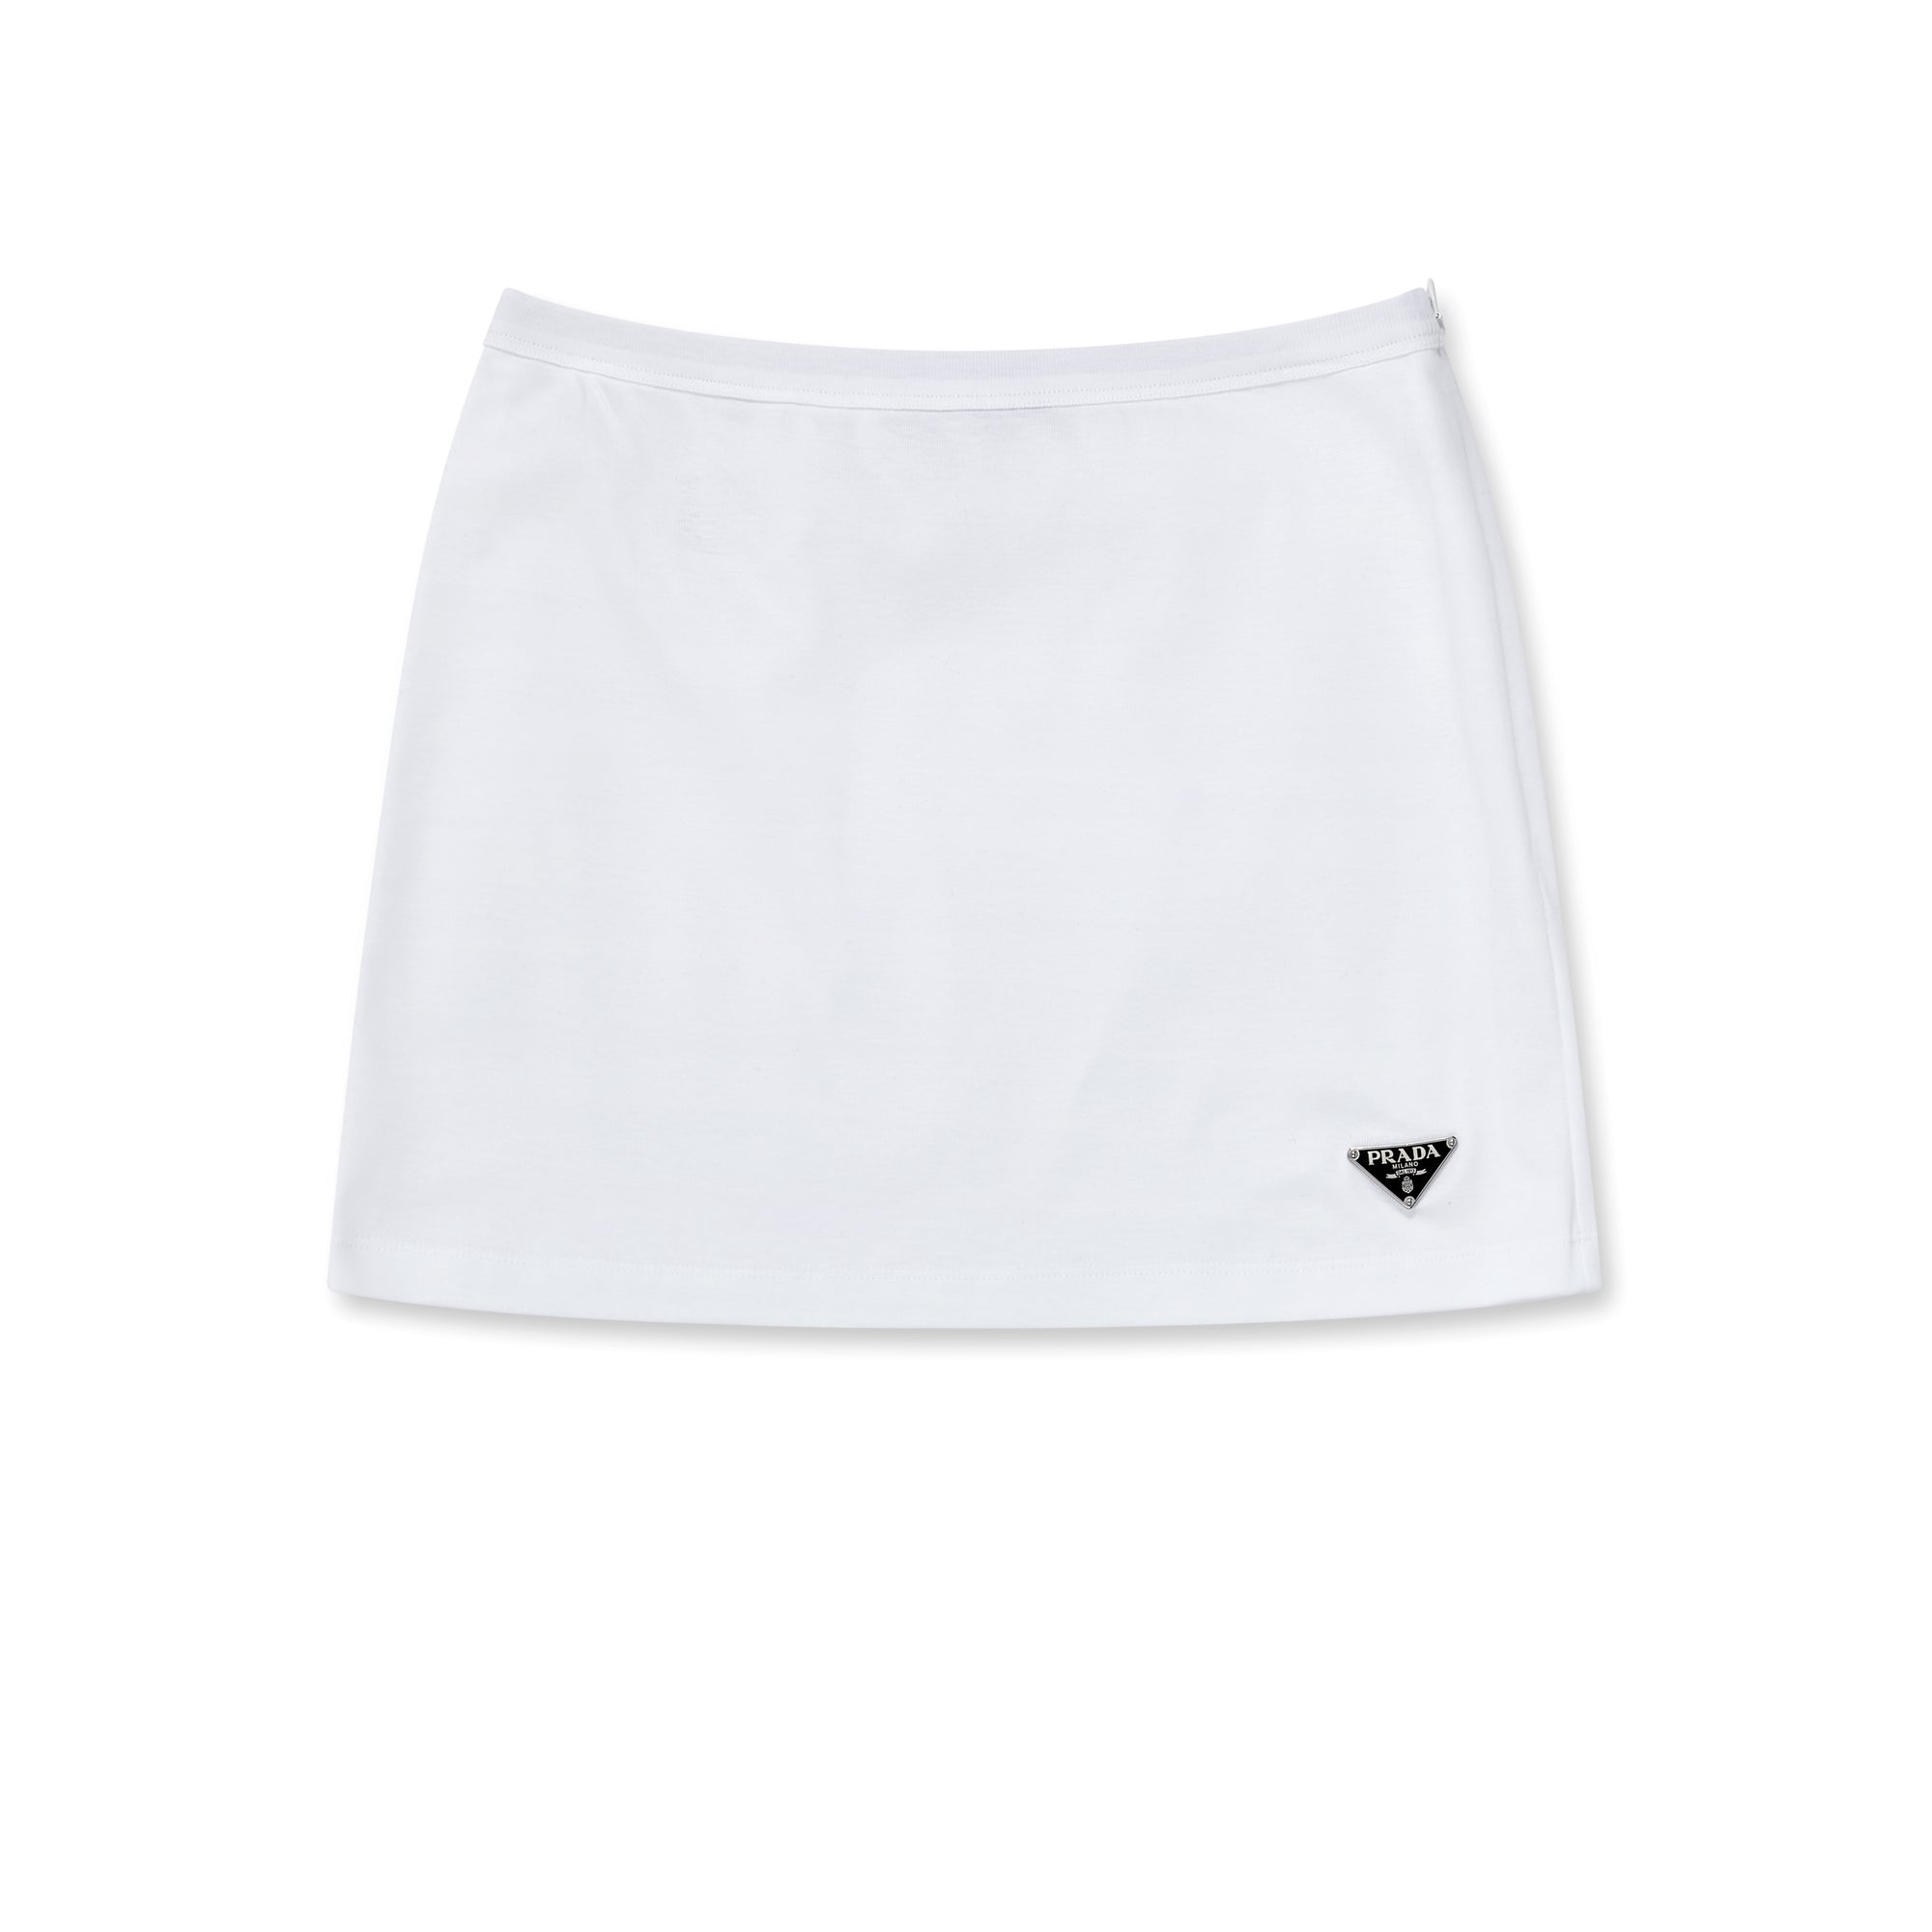 Prada - Women’s Jersey Miniskirt - (White) view 5